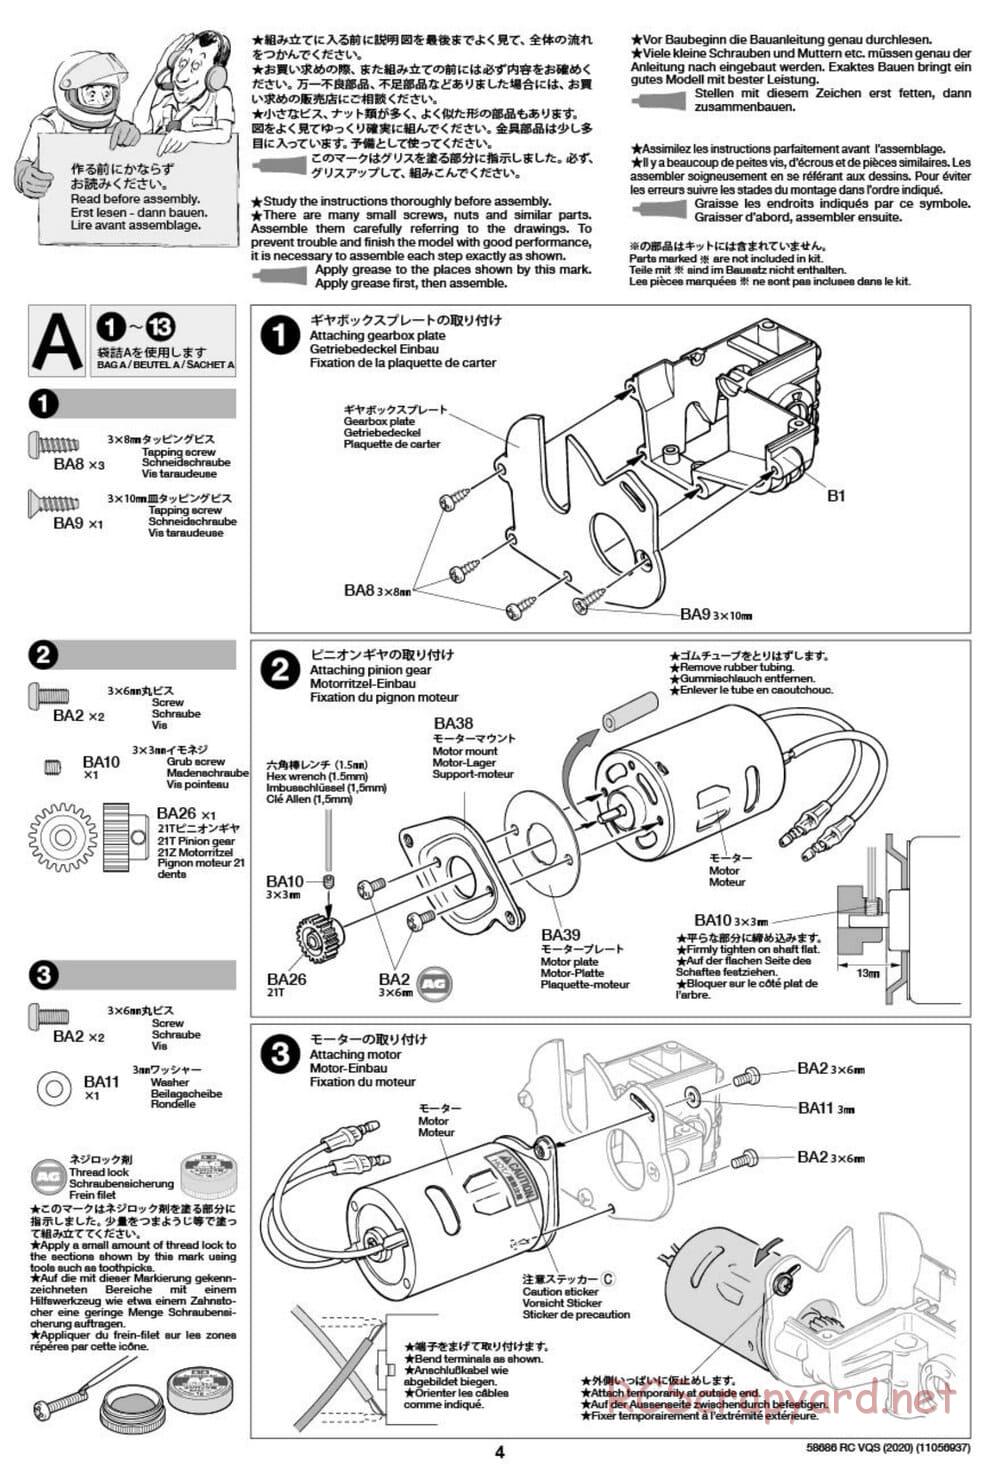 Tamiya - VQS (2020) - AV Chassis - Manual - Page 4